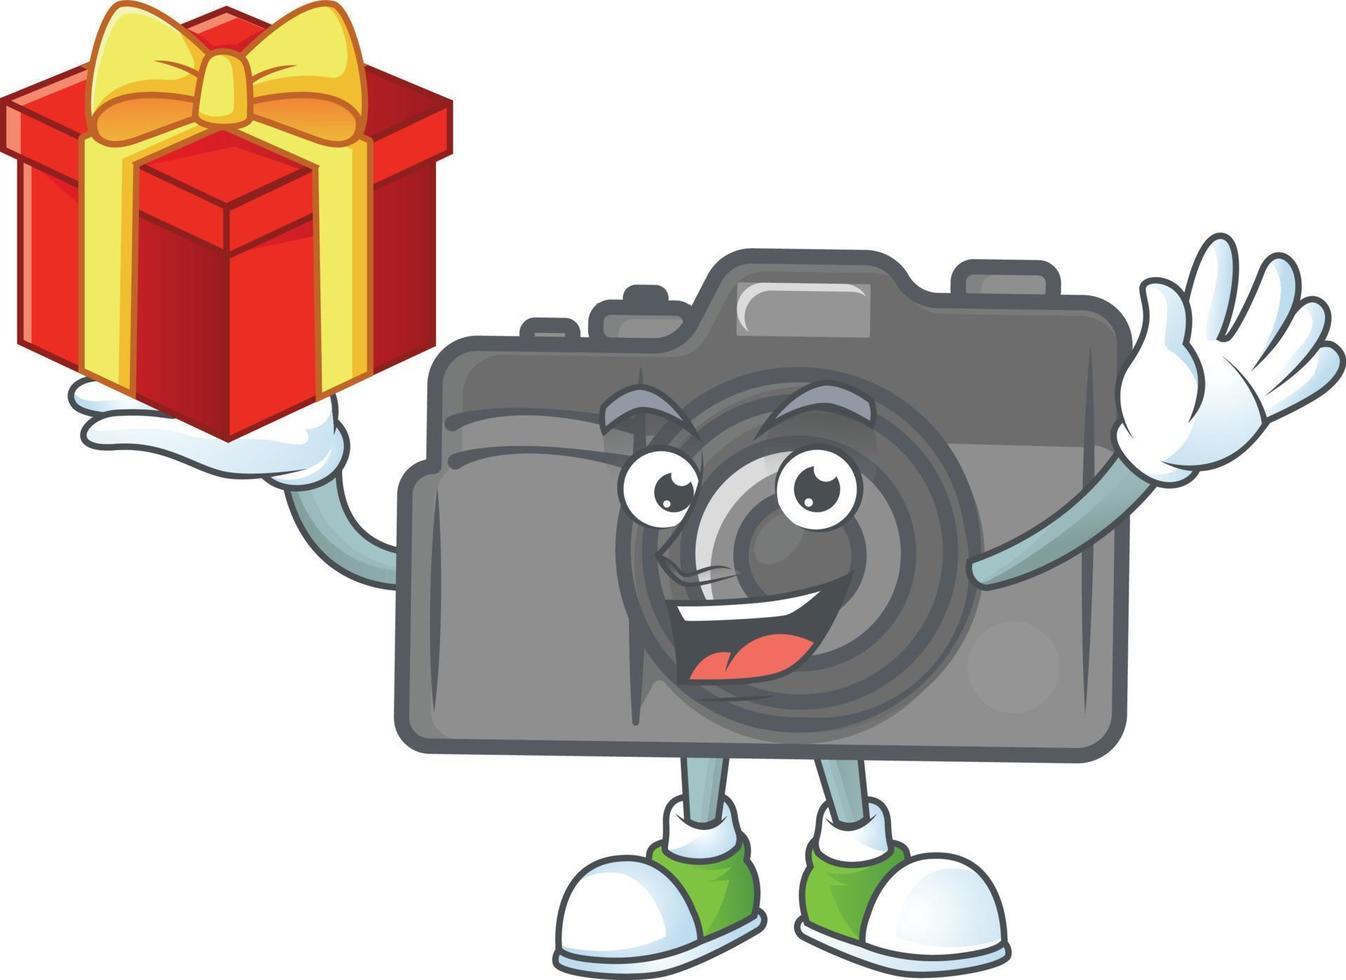 Digital camera mascot icon design vector